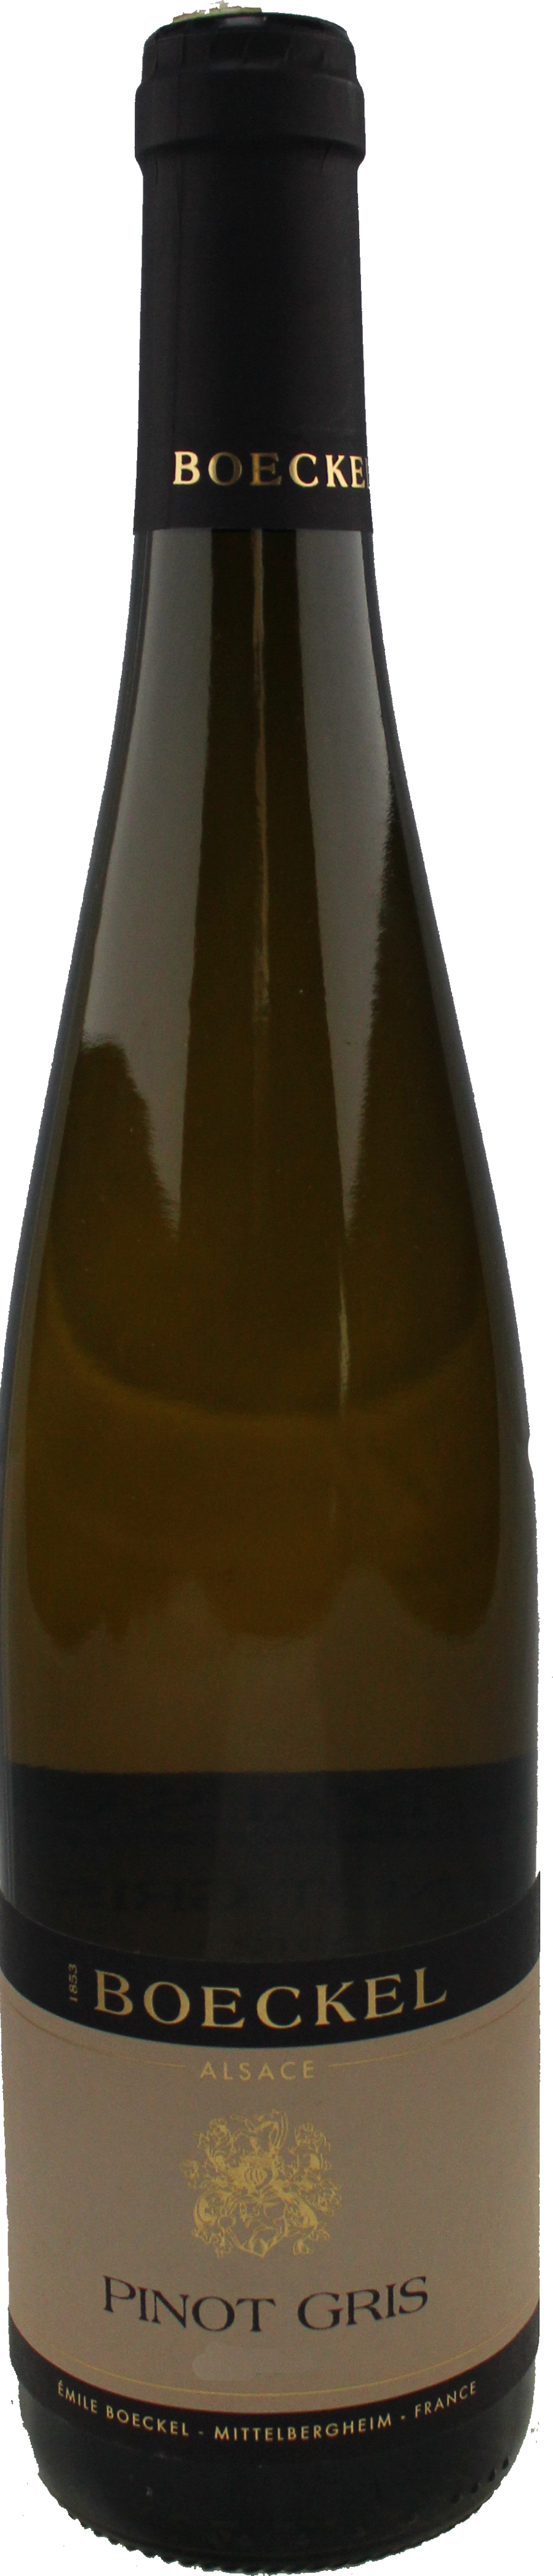 Bottle shot of 2013 Pinot Gris